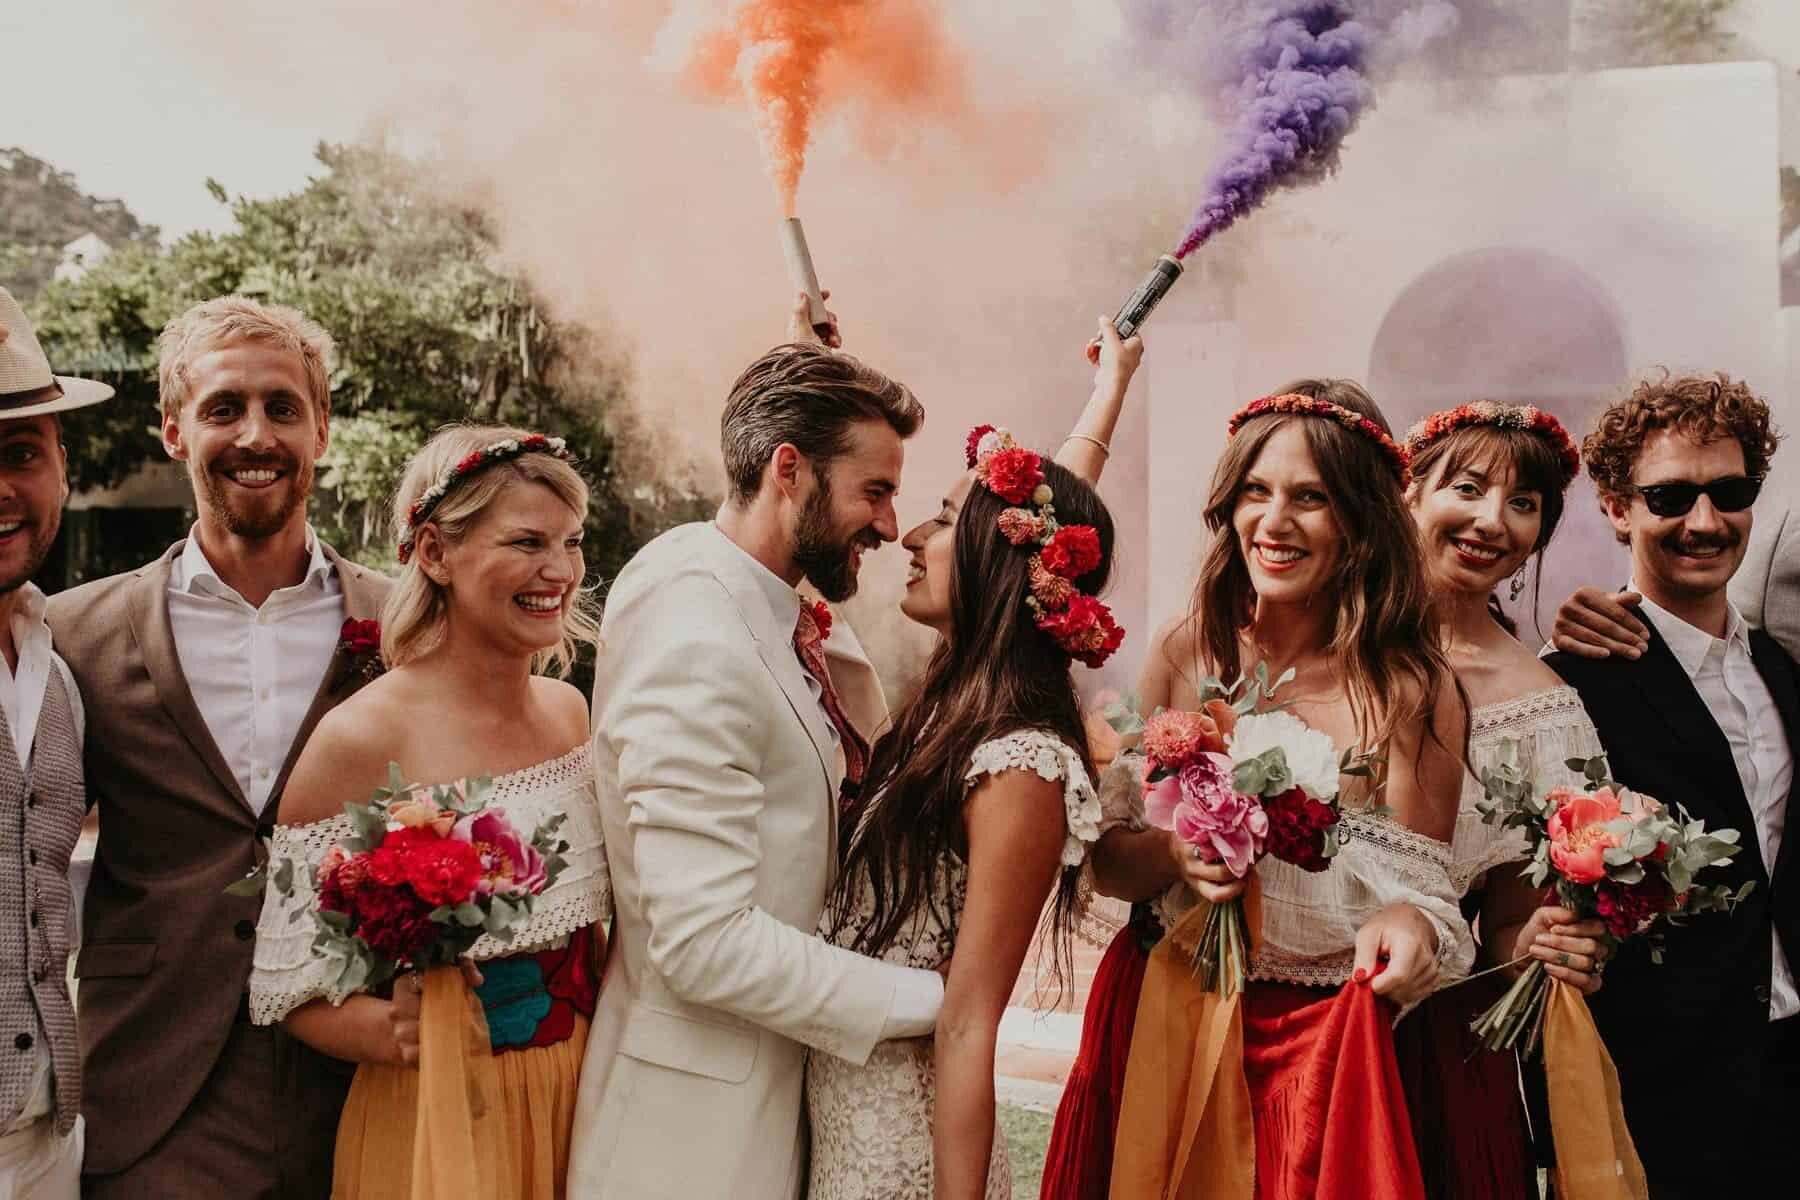 Smoke bomb photography - 2019 wedding trend